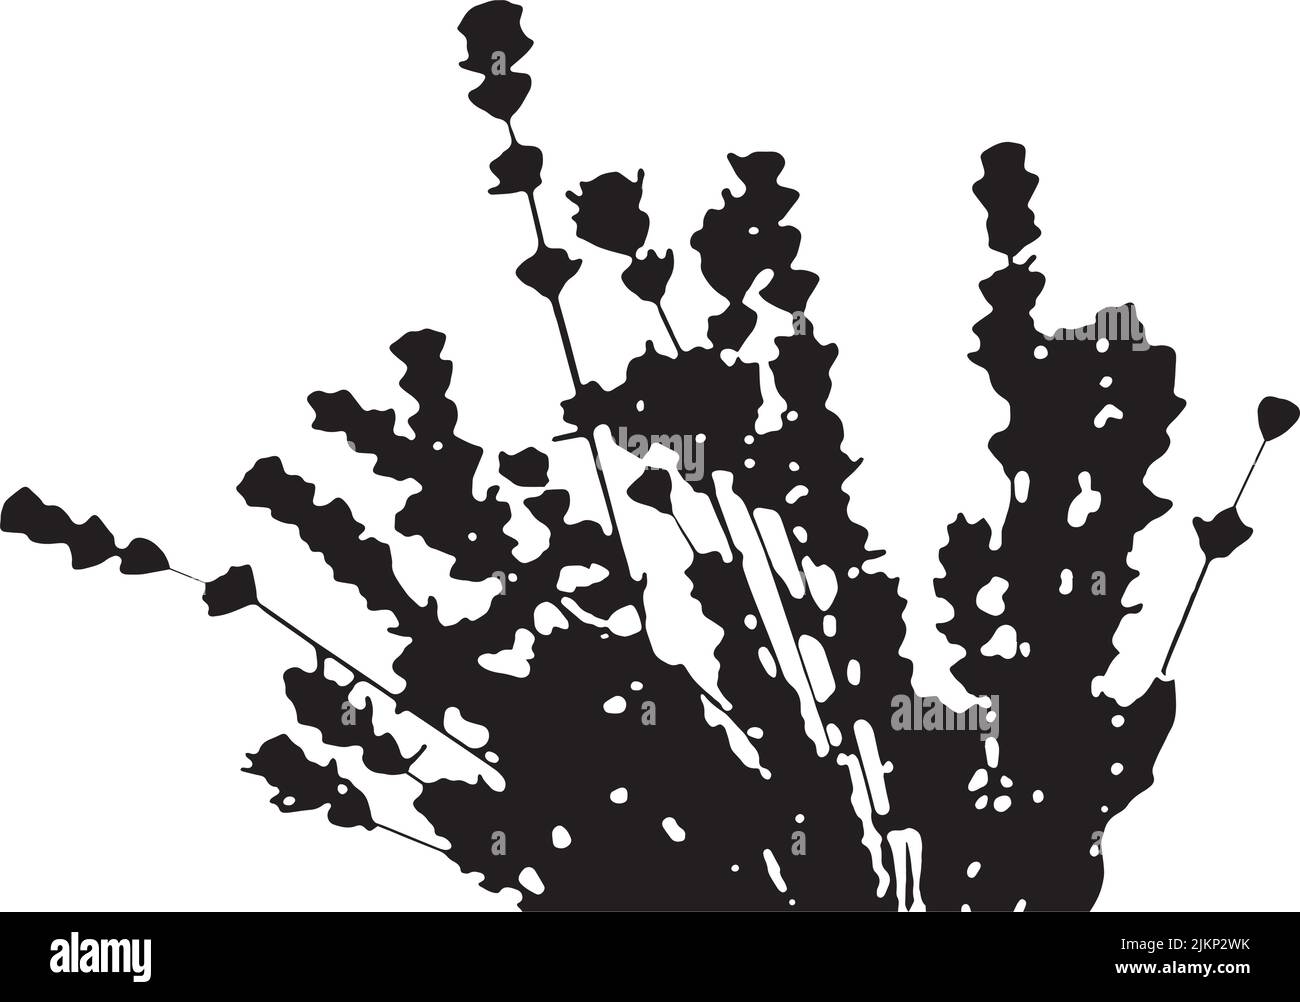 Trockenrasen-Kollektion. Illustration. Silhouette Lavendel. Festliche Dekorationsvorlage. Fedrige Graskopffedern, für Blumenarrangements, ornamental Stock Vektor